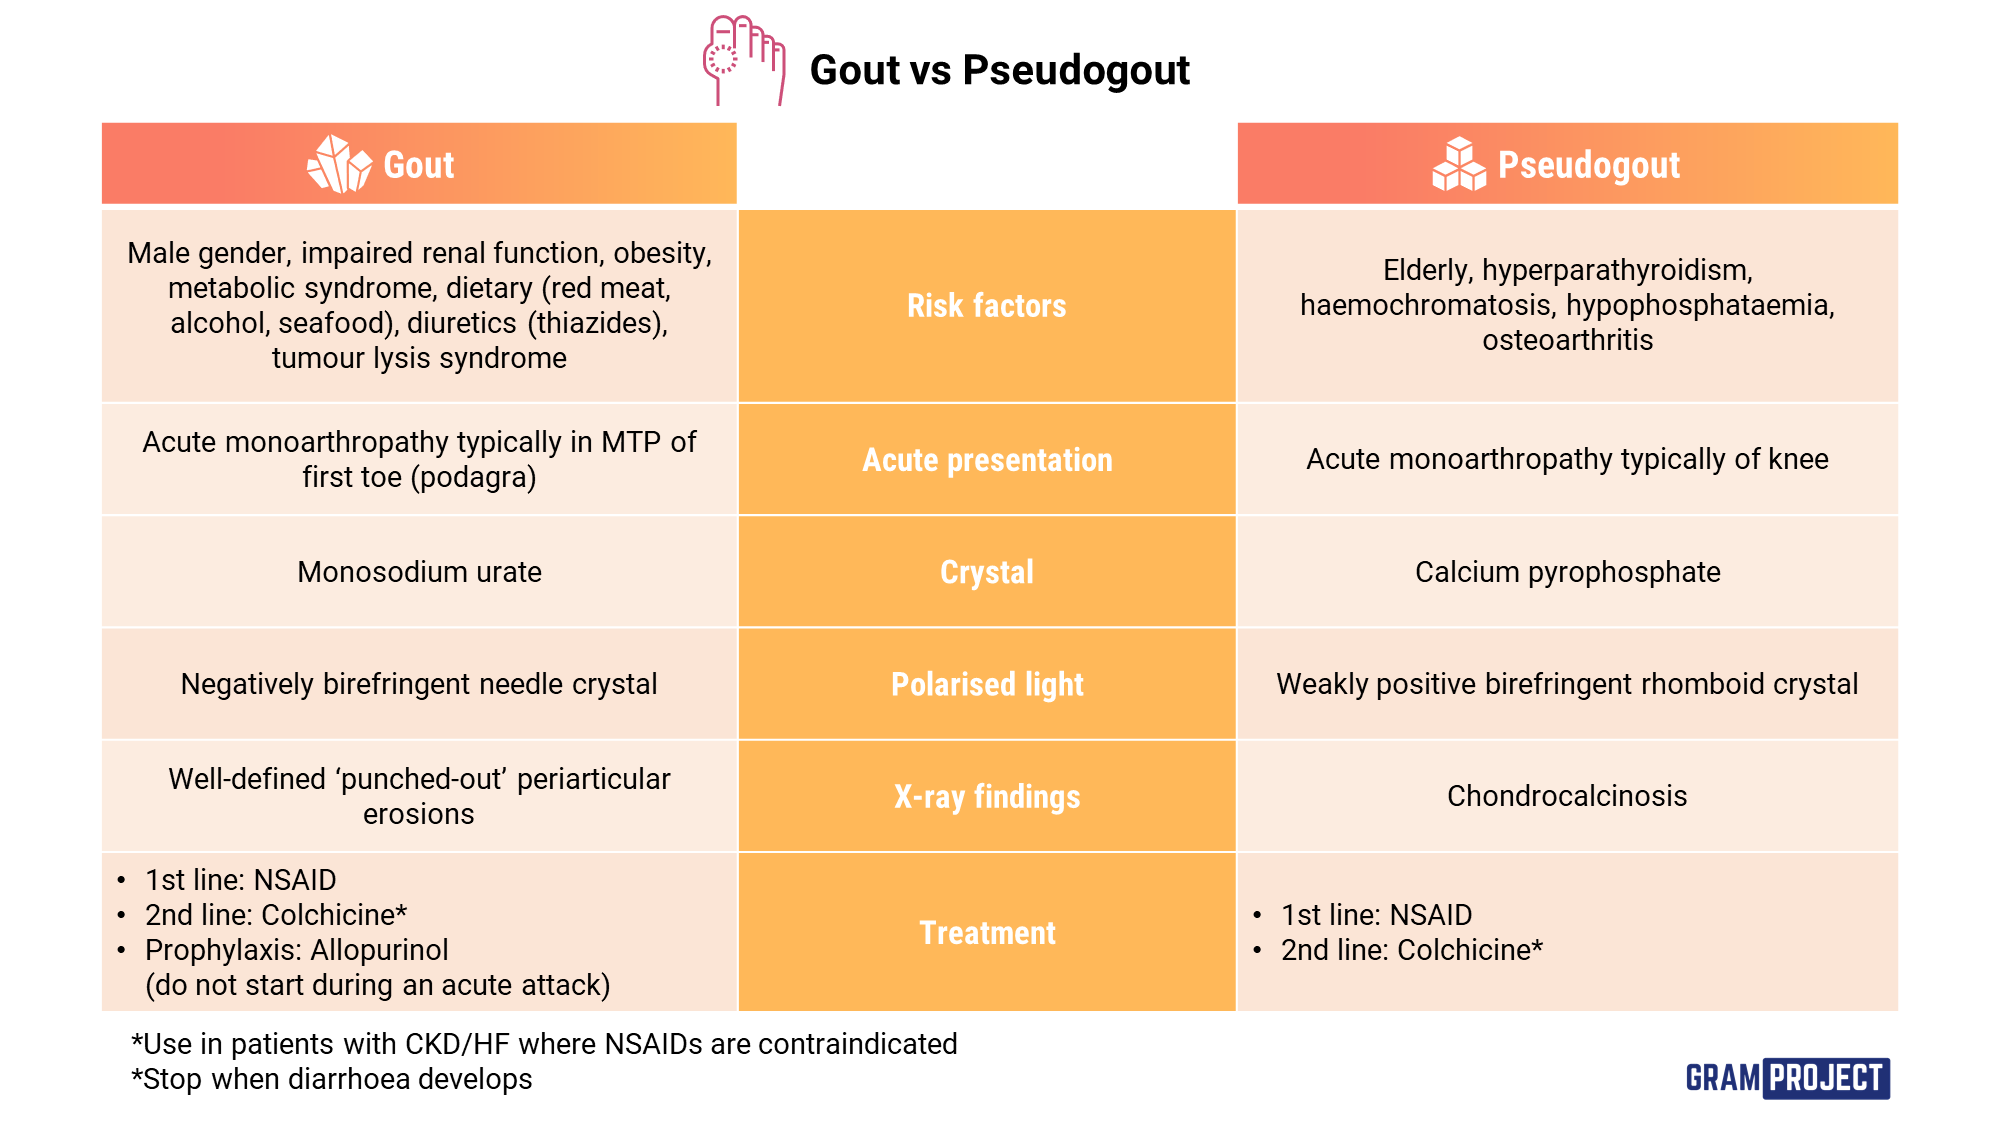 Perbedaan gout dan pseudogout